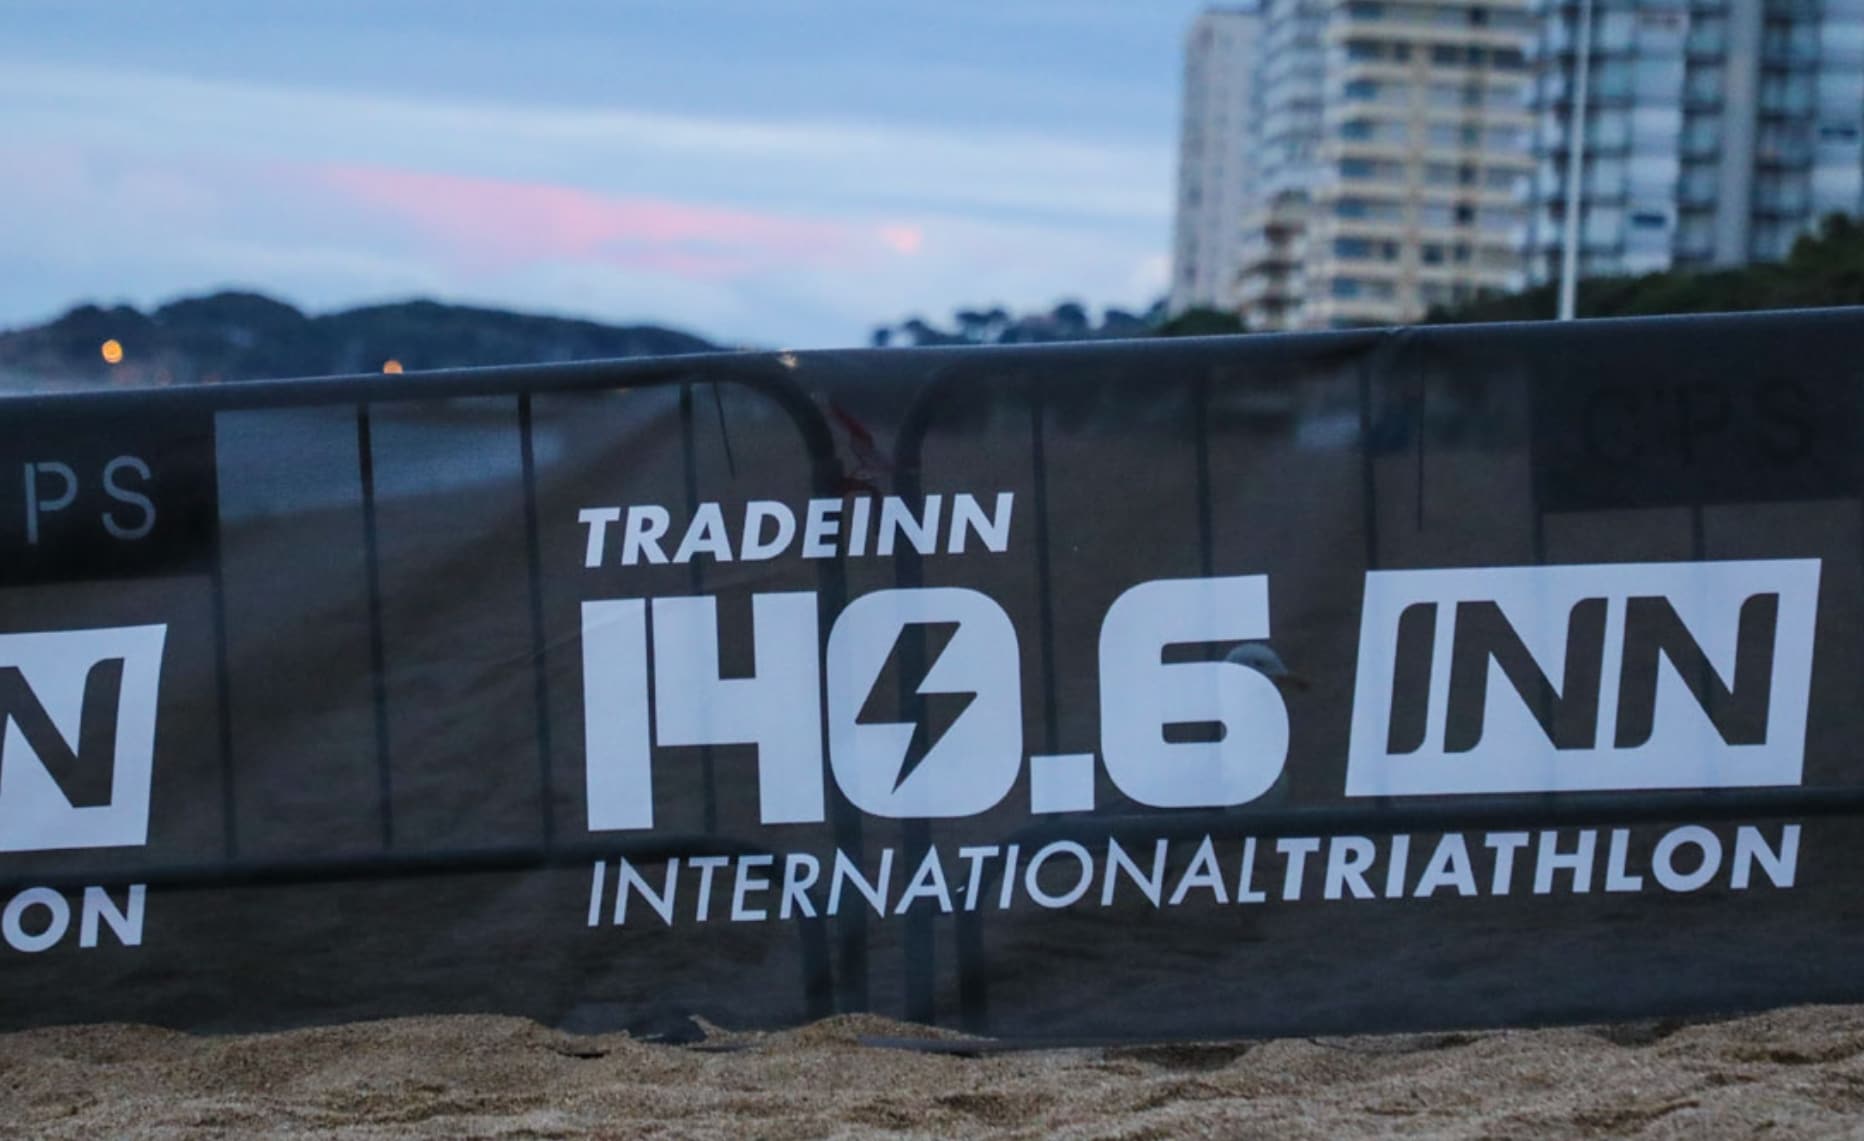 Bild der Abfahrt des Tradeinn International Triathlon 1406INN